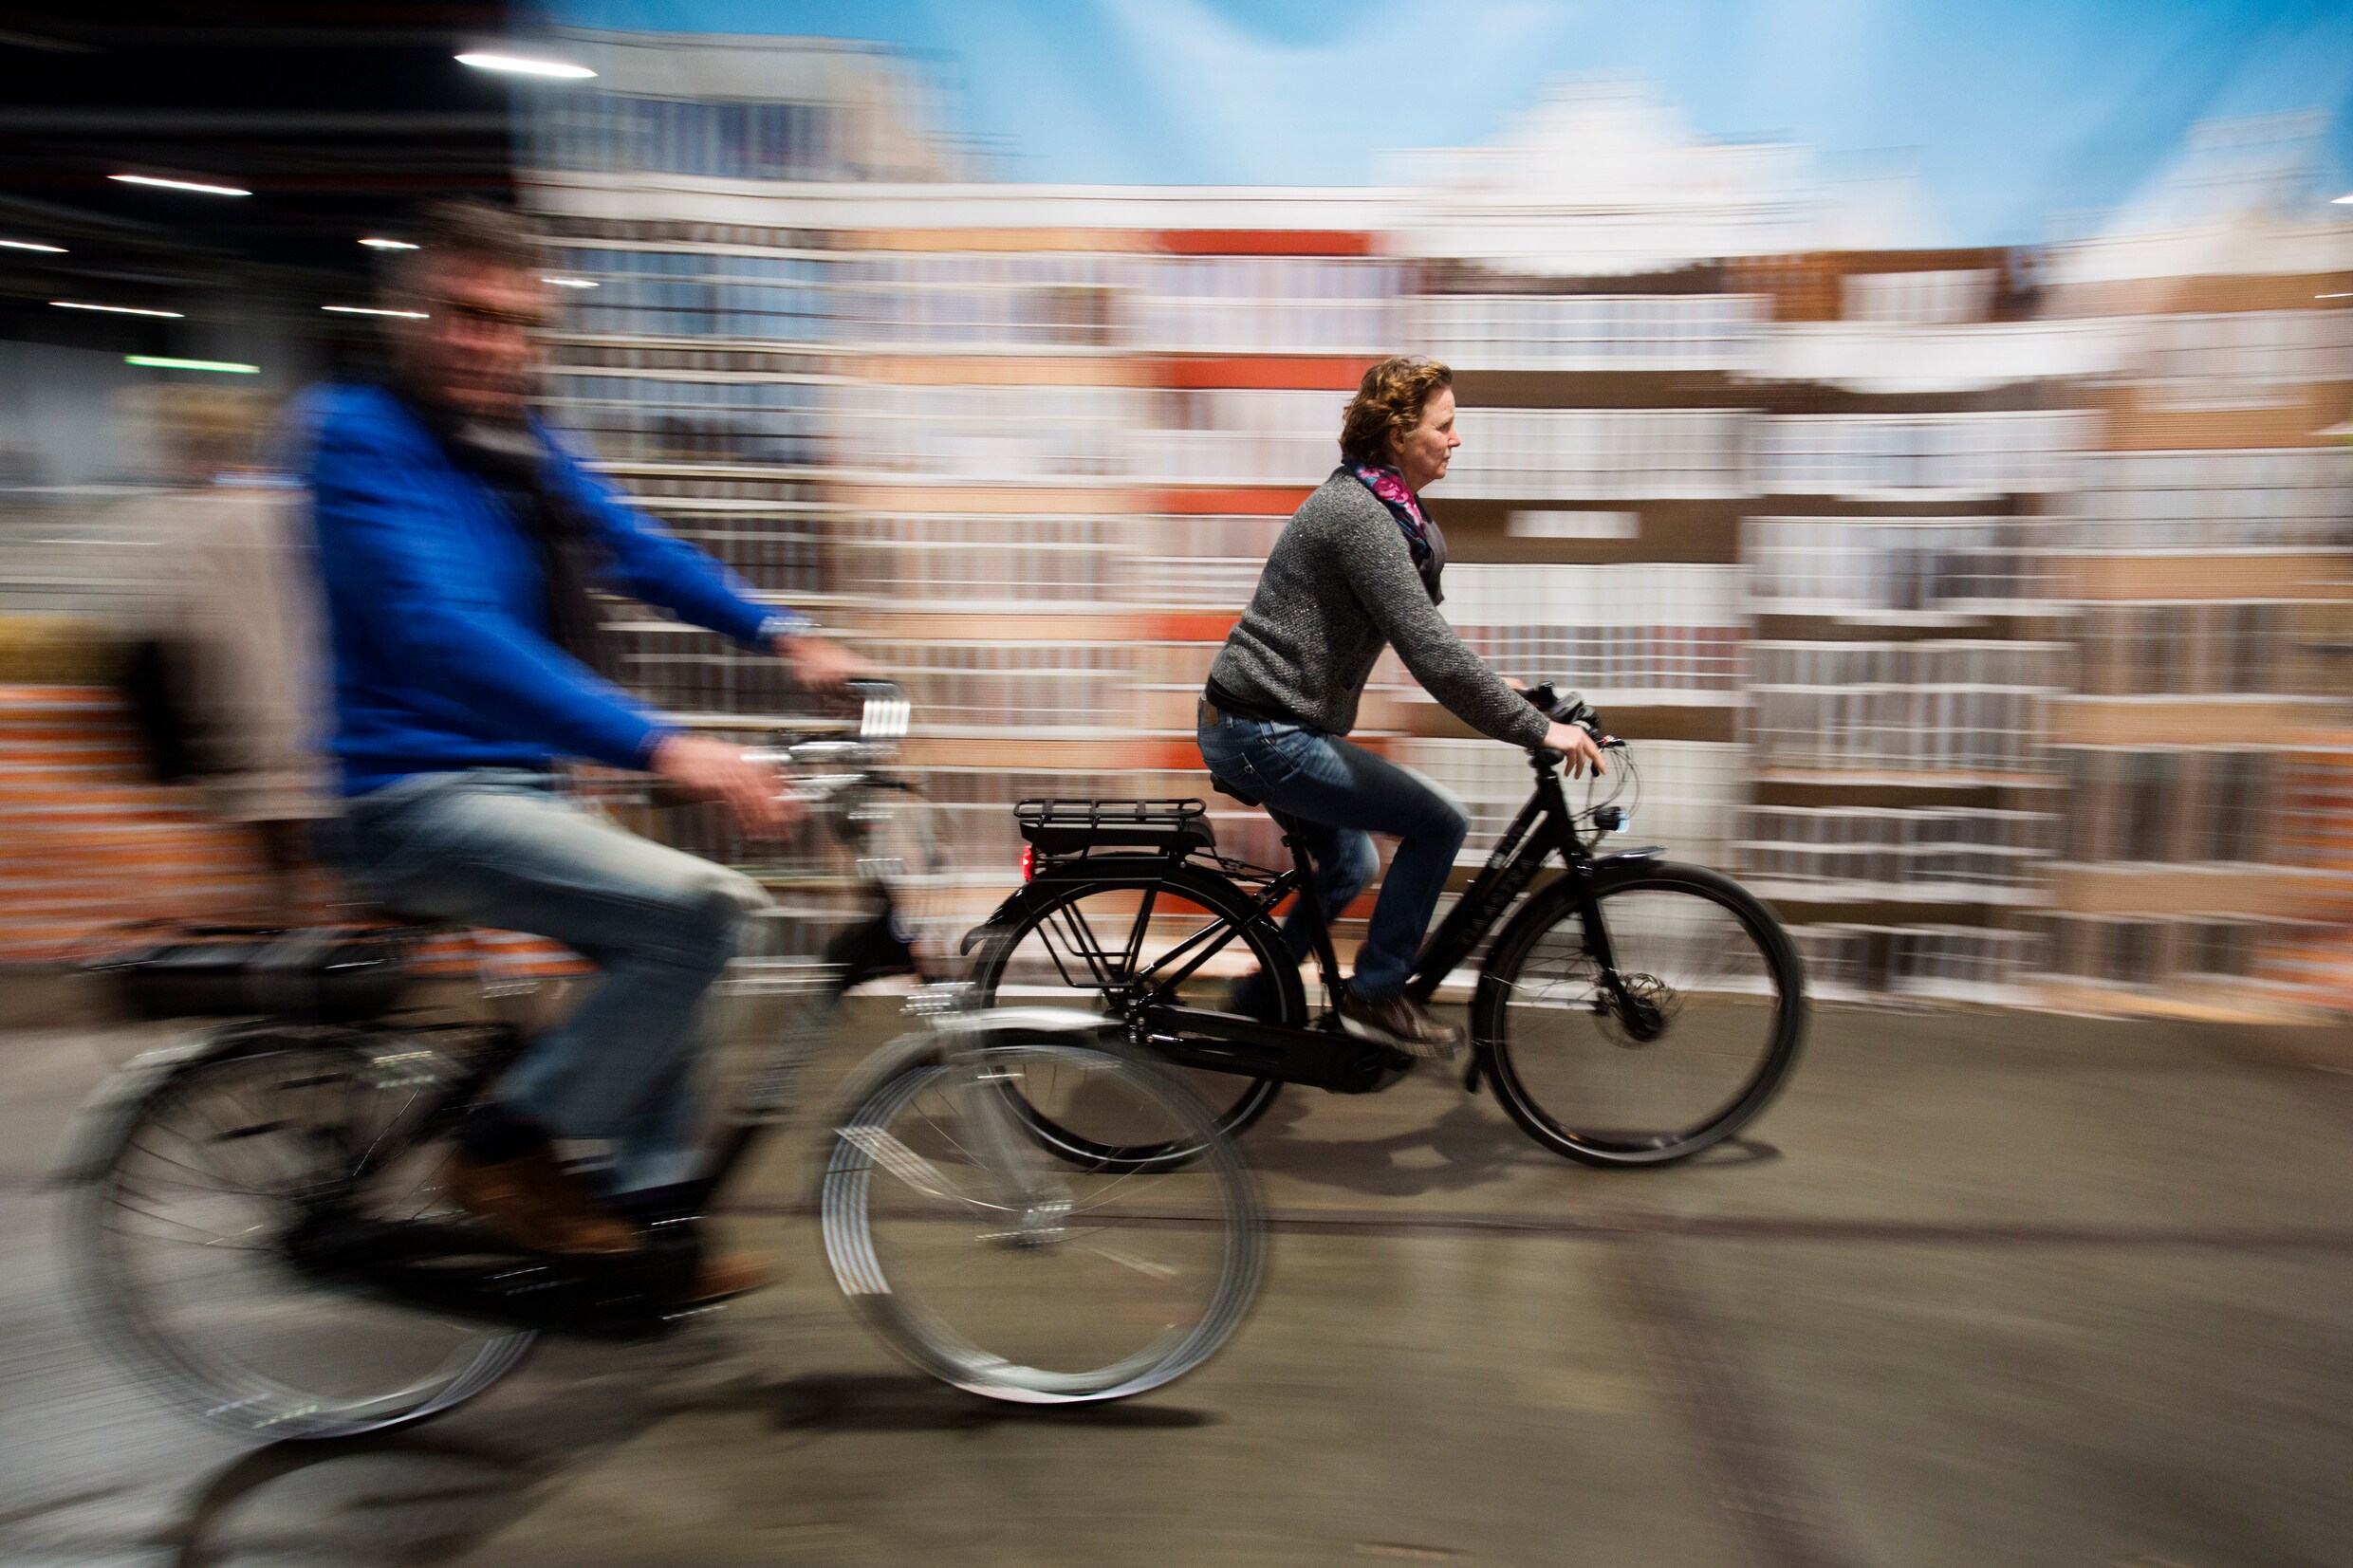 Een op de drie eigenaars van elektrische fiets kocht die voor woon-werkverkeer